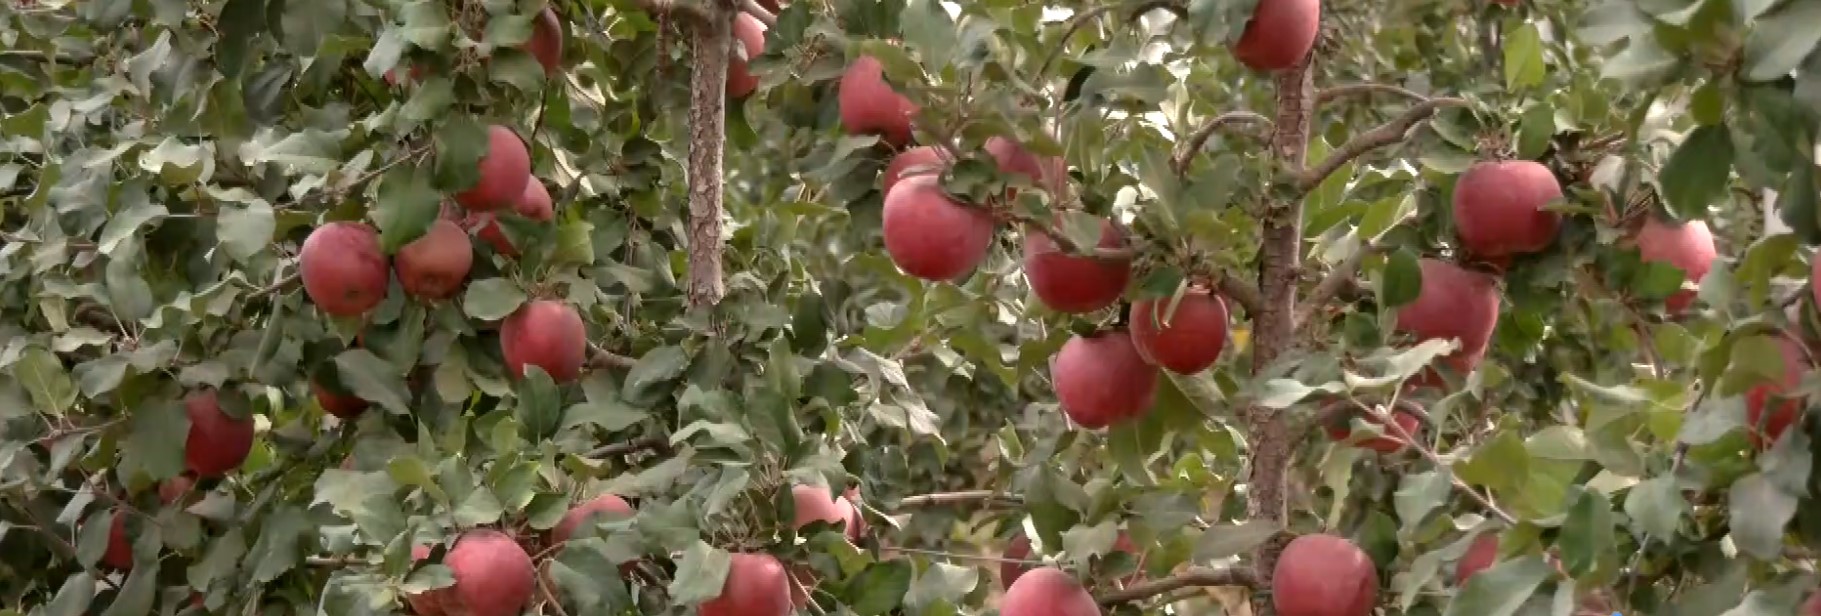 Πύργοι Εορδαίας: Μειωμένη κατά 50% η παραγωγή μήλων – Ικανοποιητικές οι τιμές